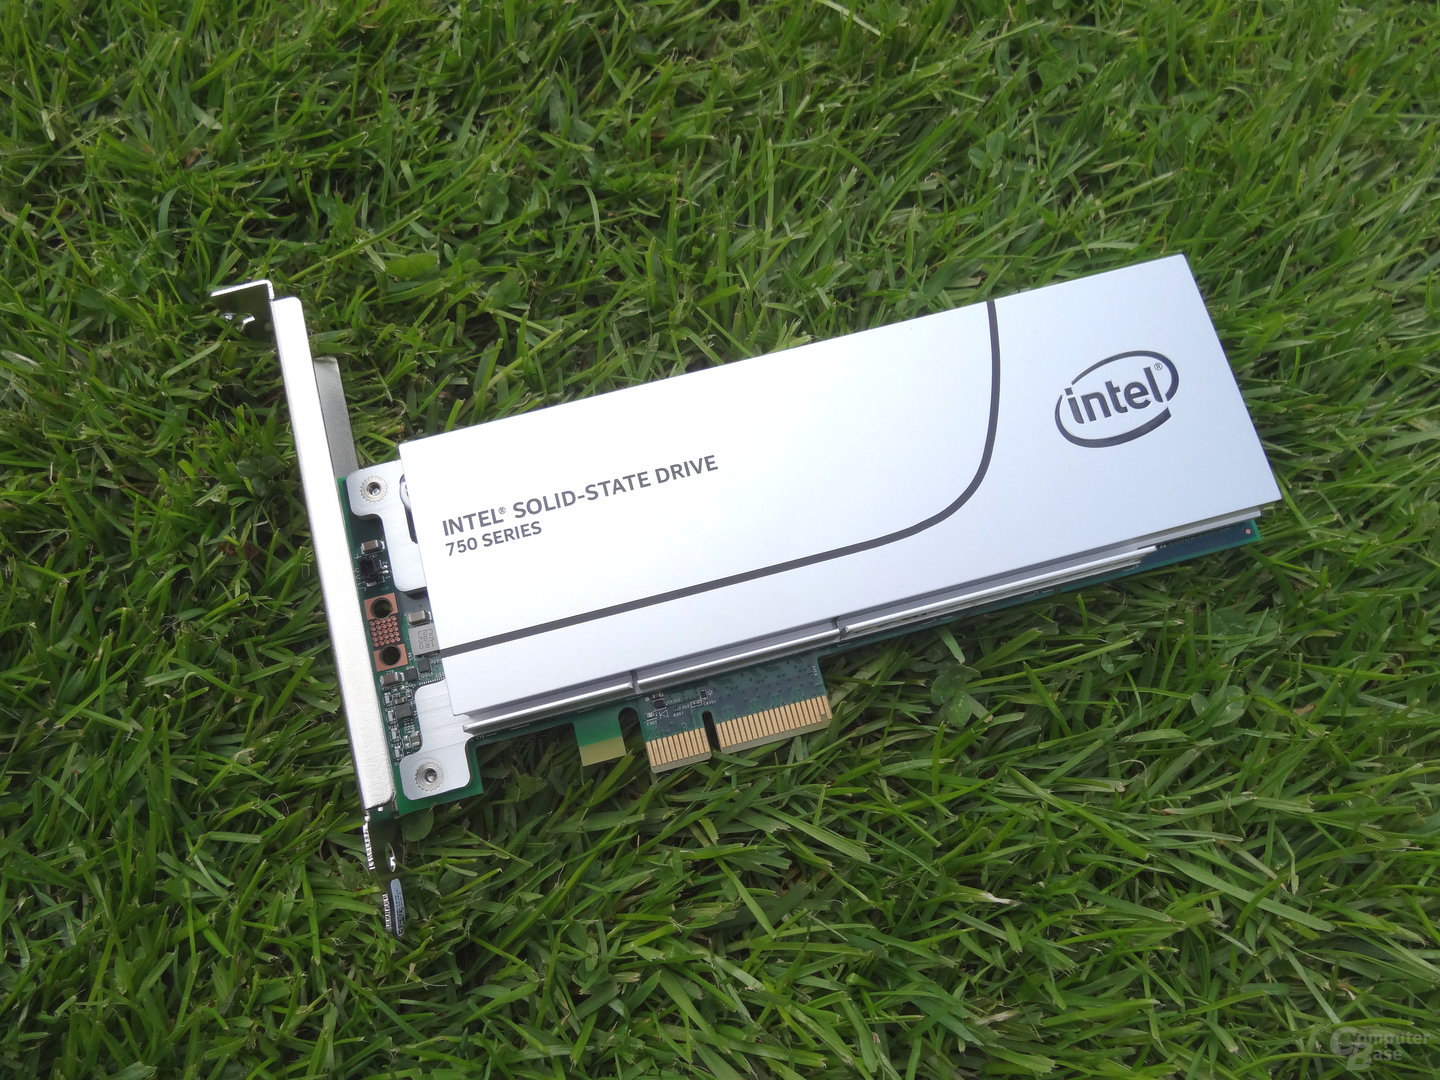 Intel ssd 750 series - Die hochwertigsten Intel ssd 750 series auf einen Blick